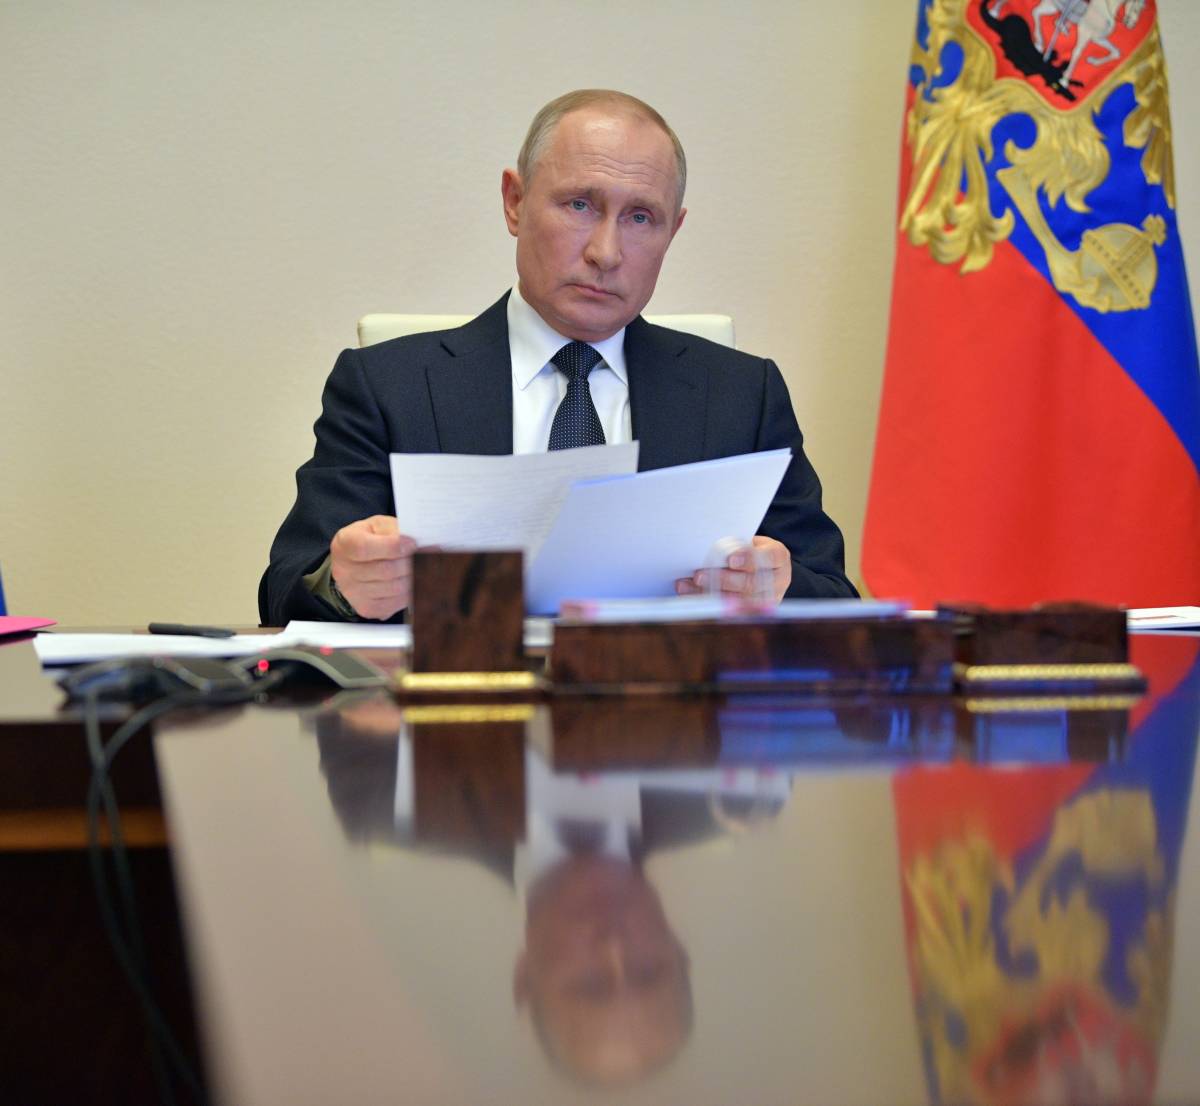 Реакция Прибалтики на статью Путина: начинается серьезная игра нервов